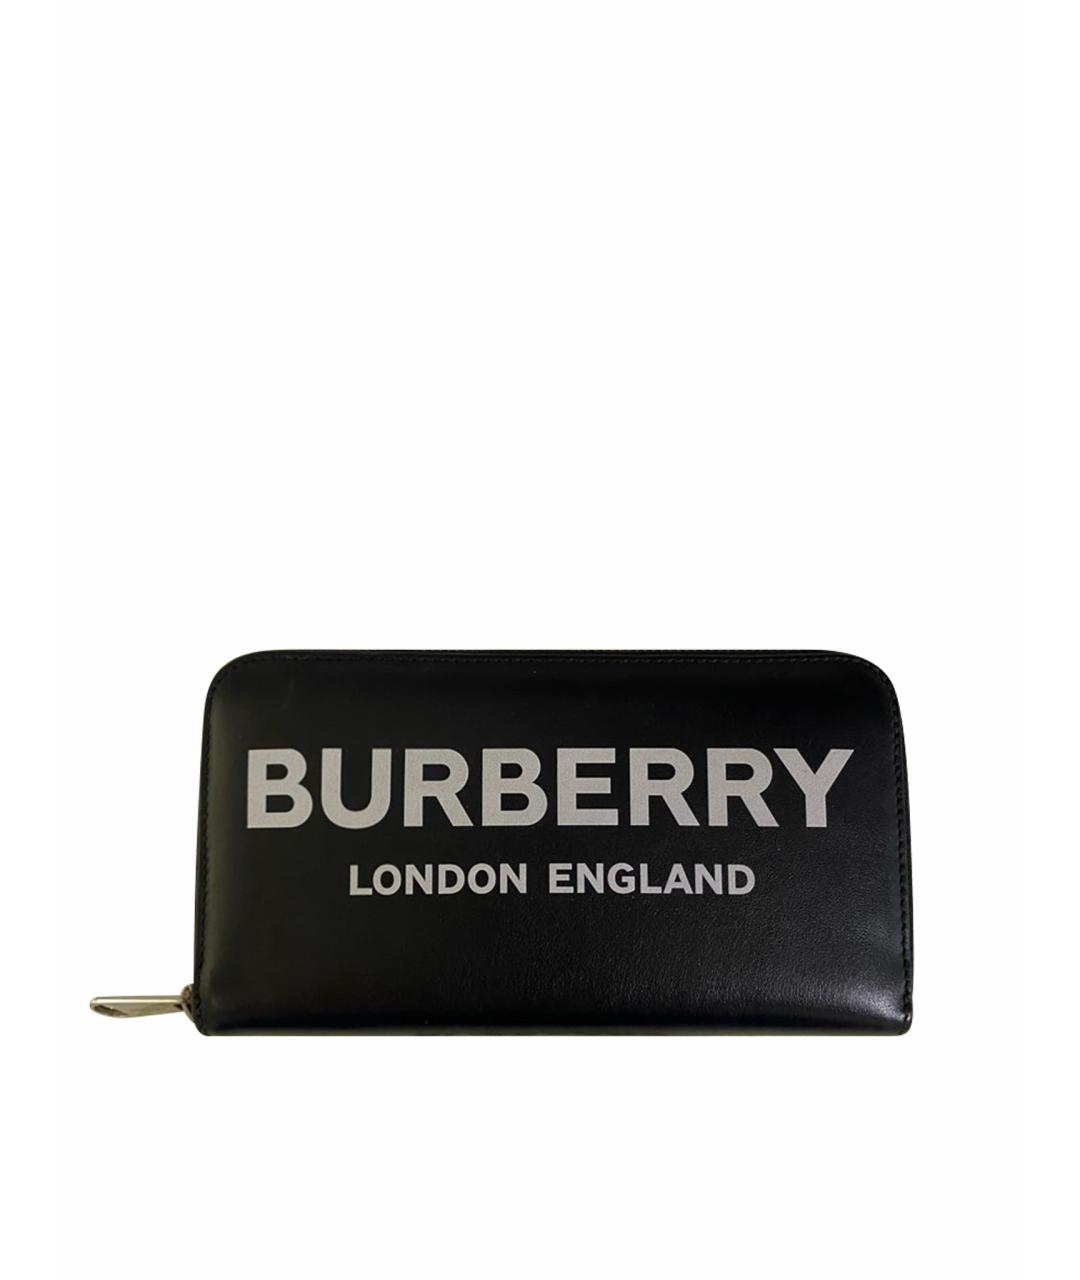 BURBERRY Черный кожаный кошелек, фото 1